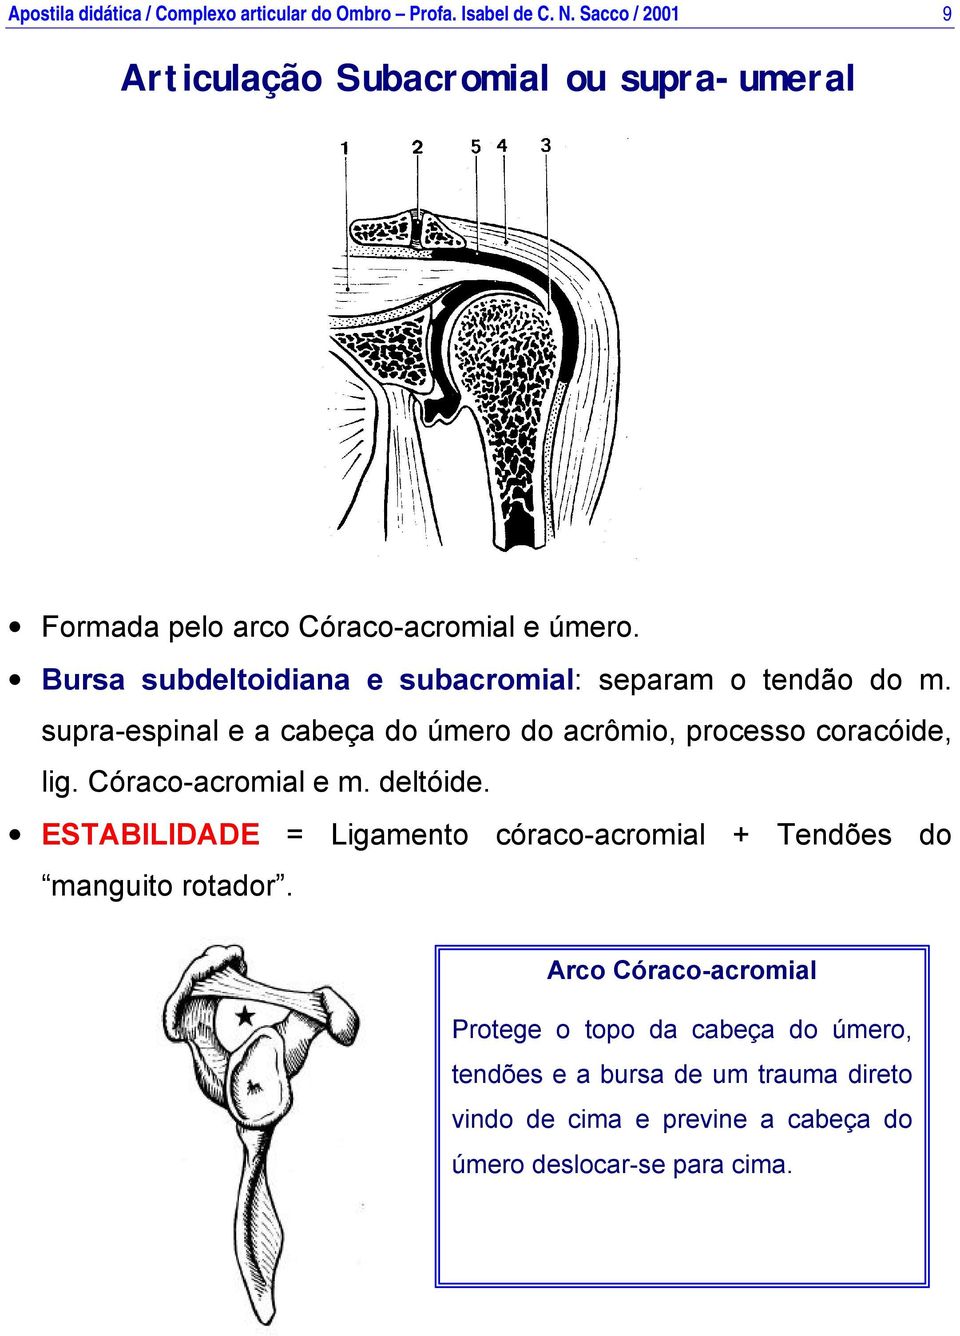 Bursa subdeltoidiana e subacromial: separam o tendão do m. supra-espinal e a cabeça do úmero do acrômio, processo coracóide, lig.